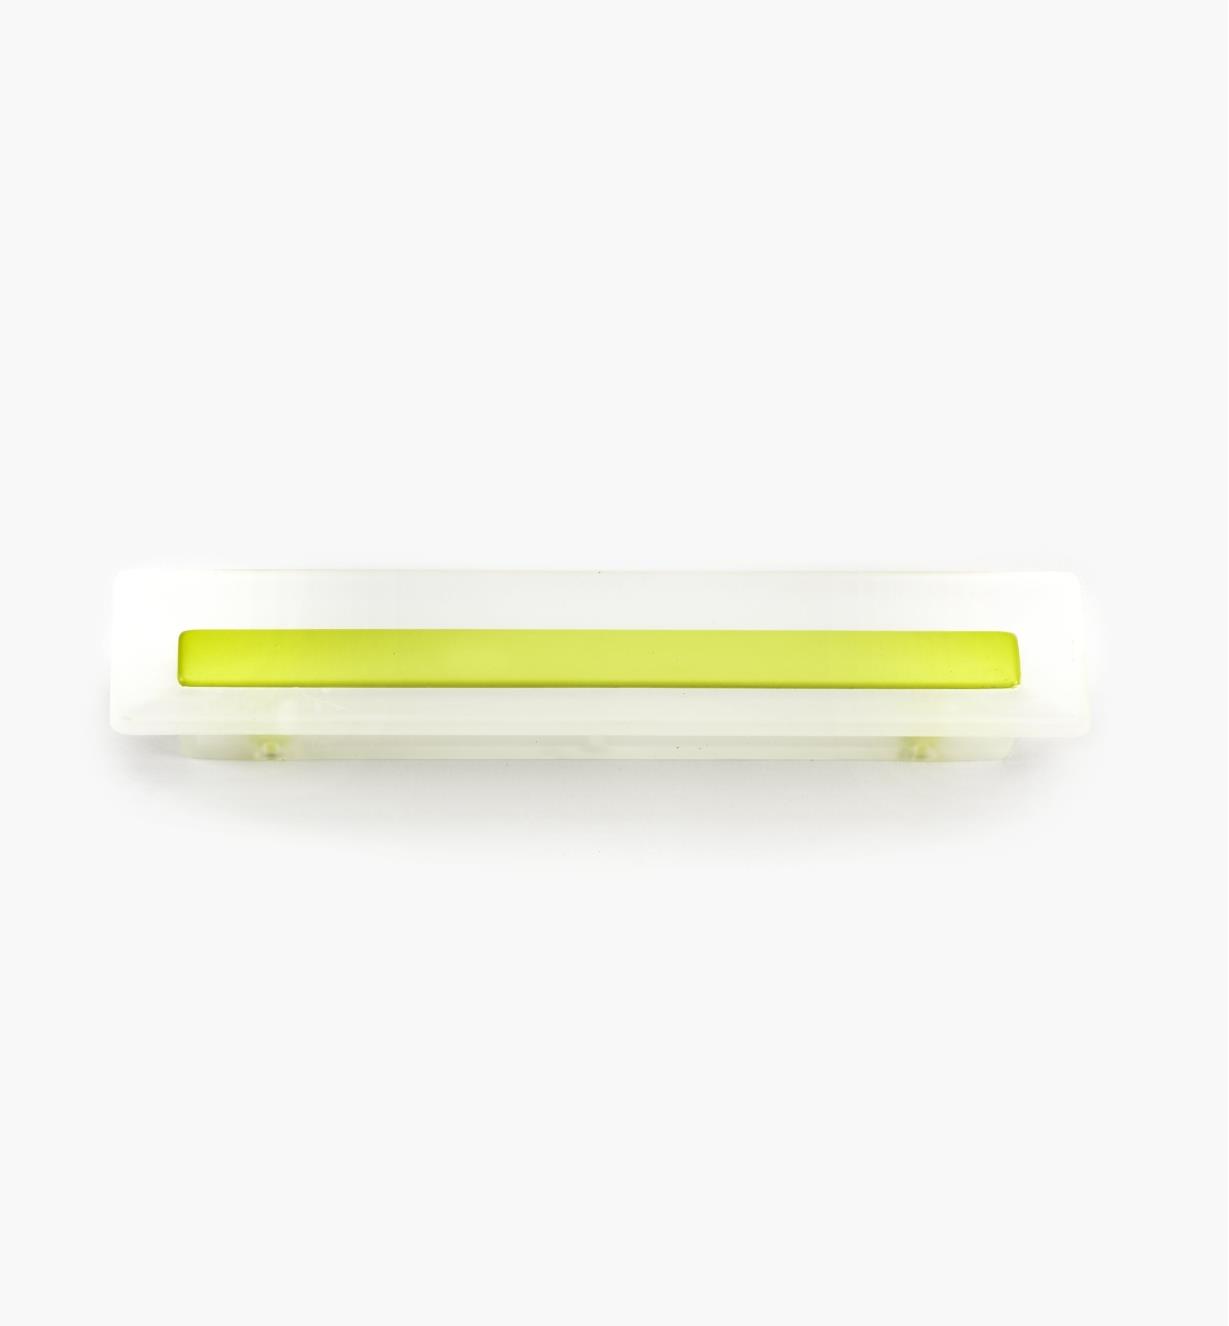 00W5423 - Poignée rectangulaire, 96 mm, série Bungee, vert-jaune